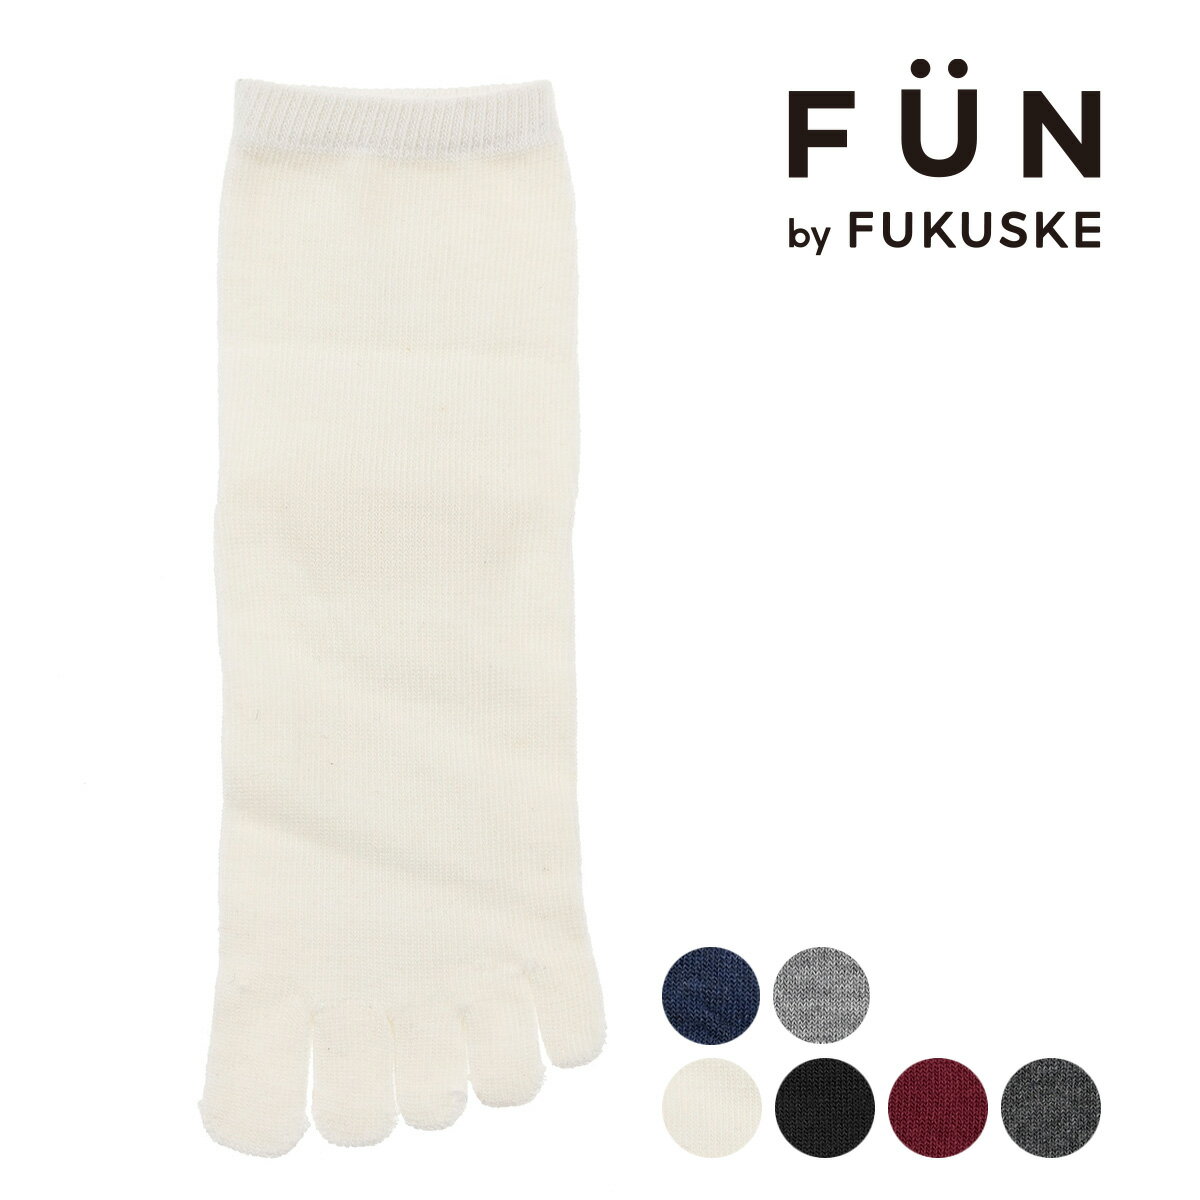 福助 公式 靴下 5本指クルー丈 レディース fukuske FUN 無地 履き口ソフト 5本指 3362-12L婦人 女性 フクスケ fukuske